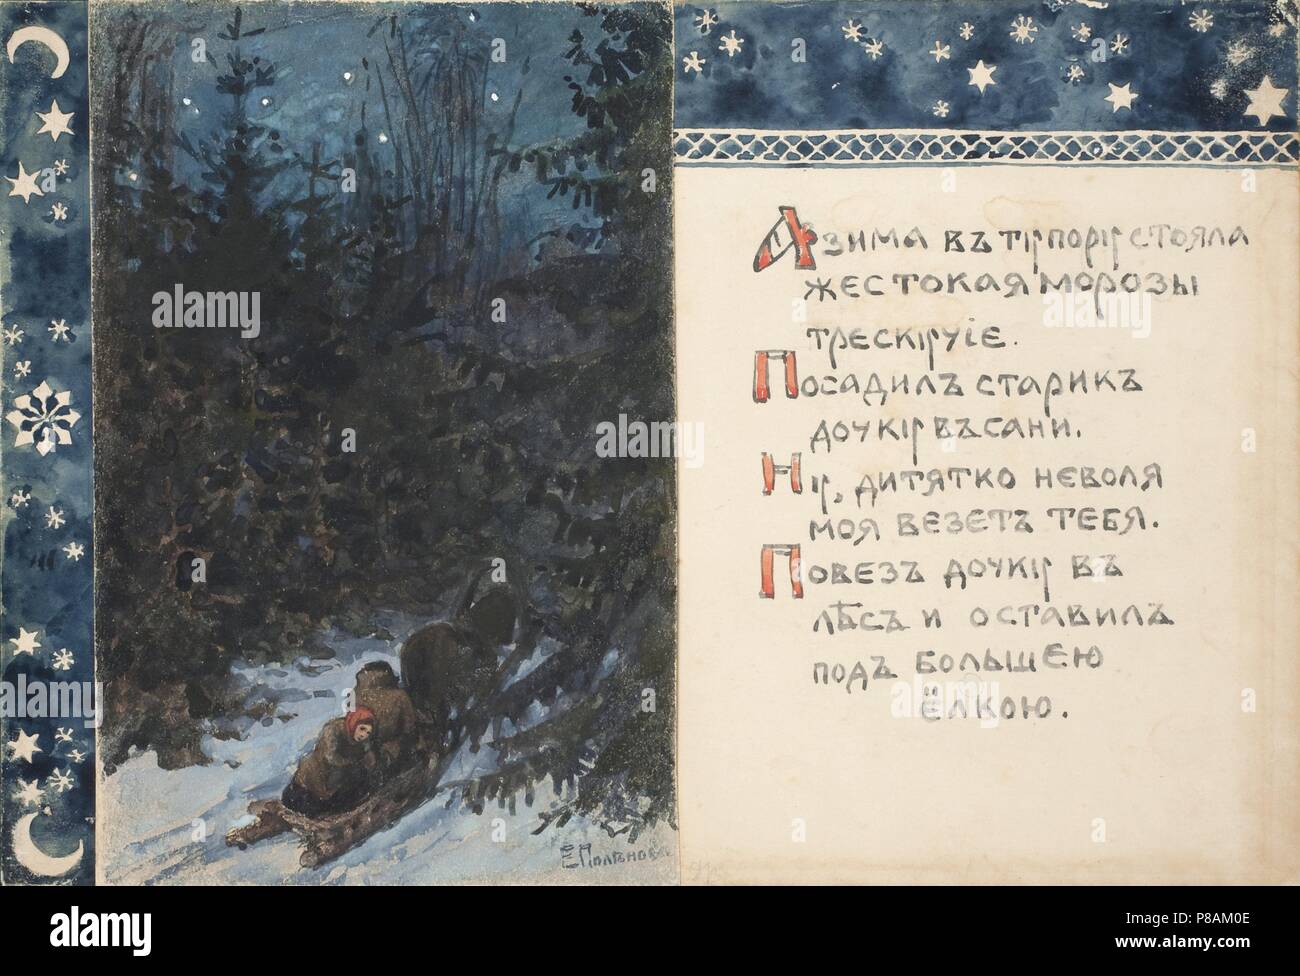 Darstellung der Geschichte Ded Moroz. Museum: Staatliche Tretjakow-Galerie, Moskau. Stockfoto